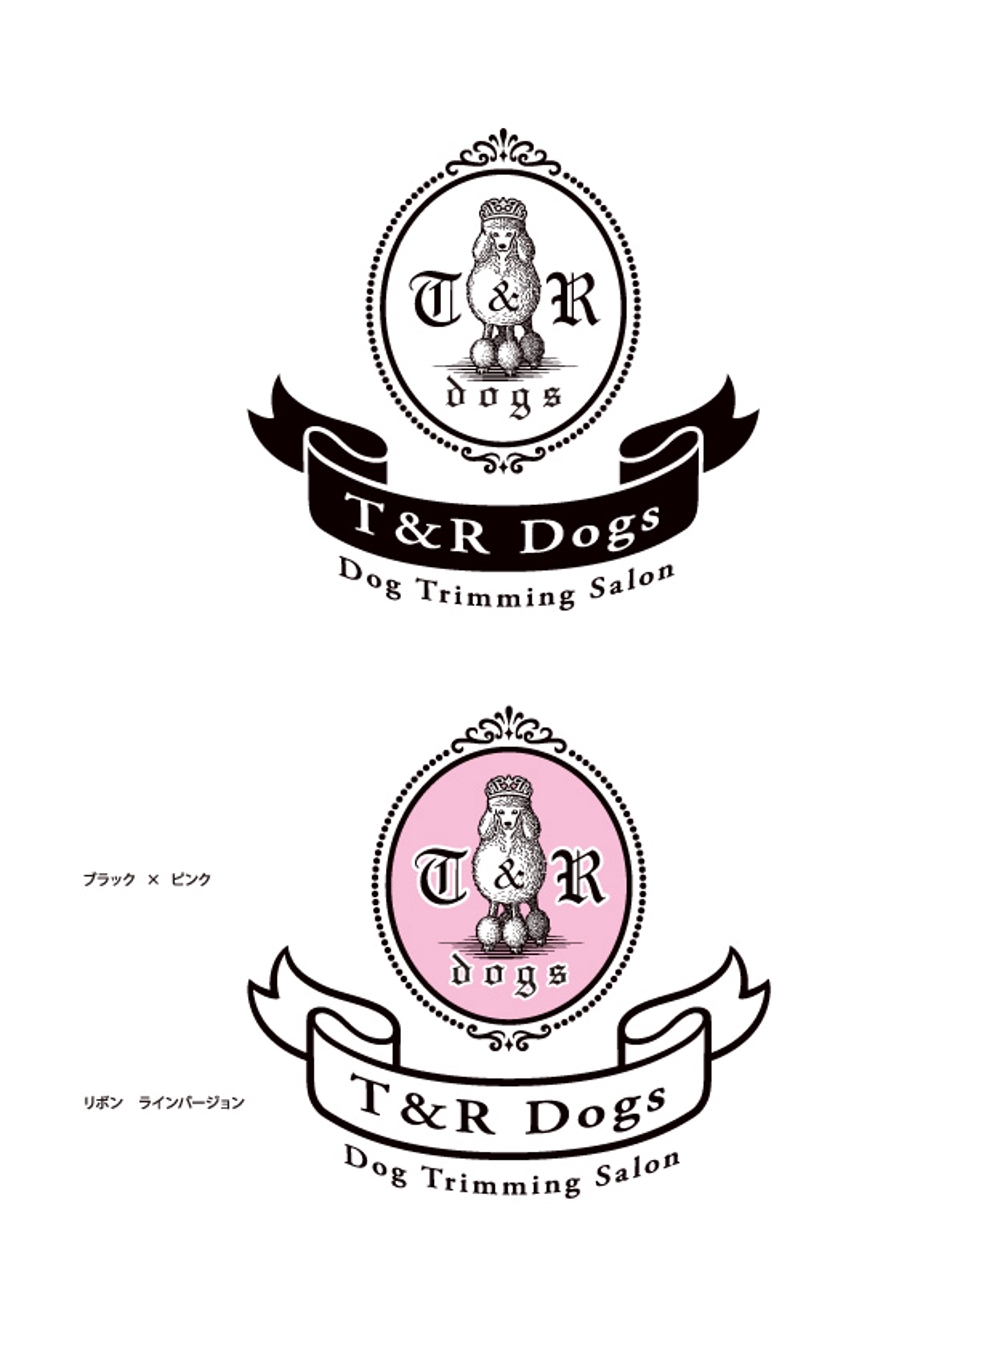 トリミングサロン『T&R Dogs』のロゴ